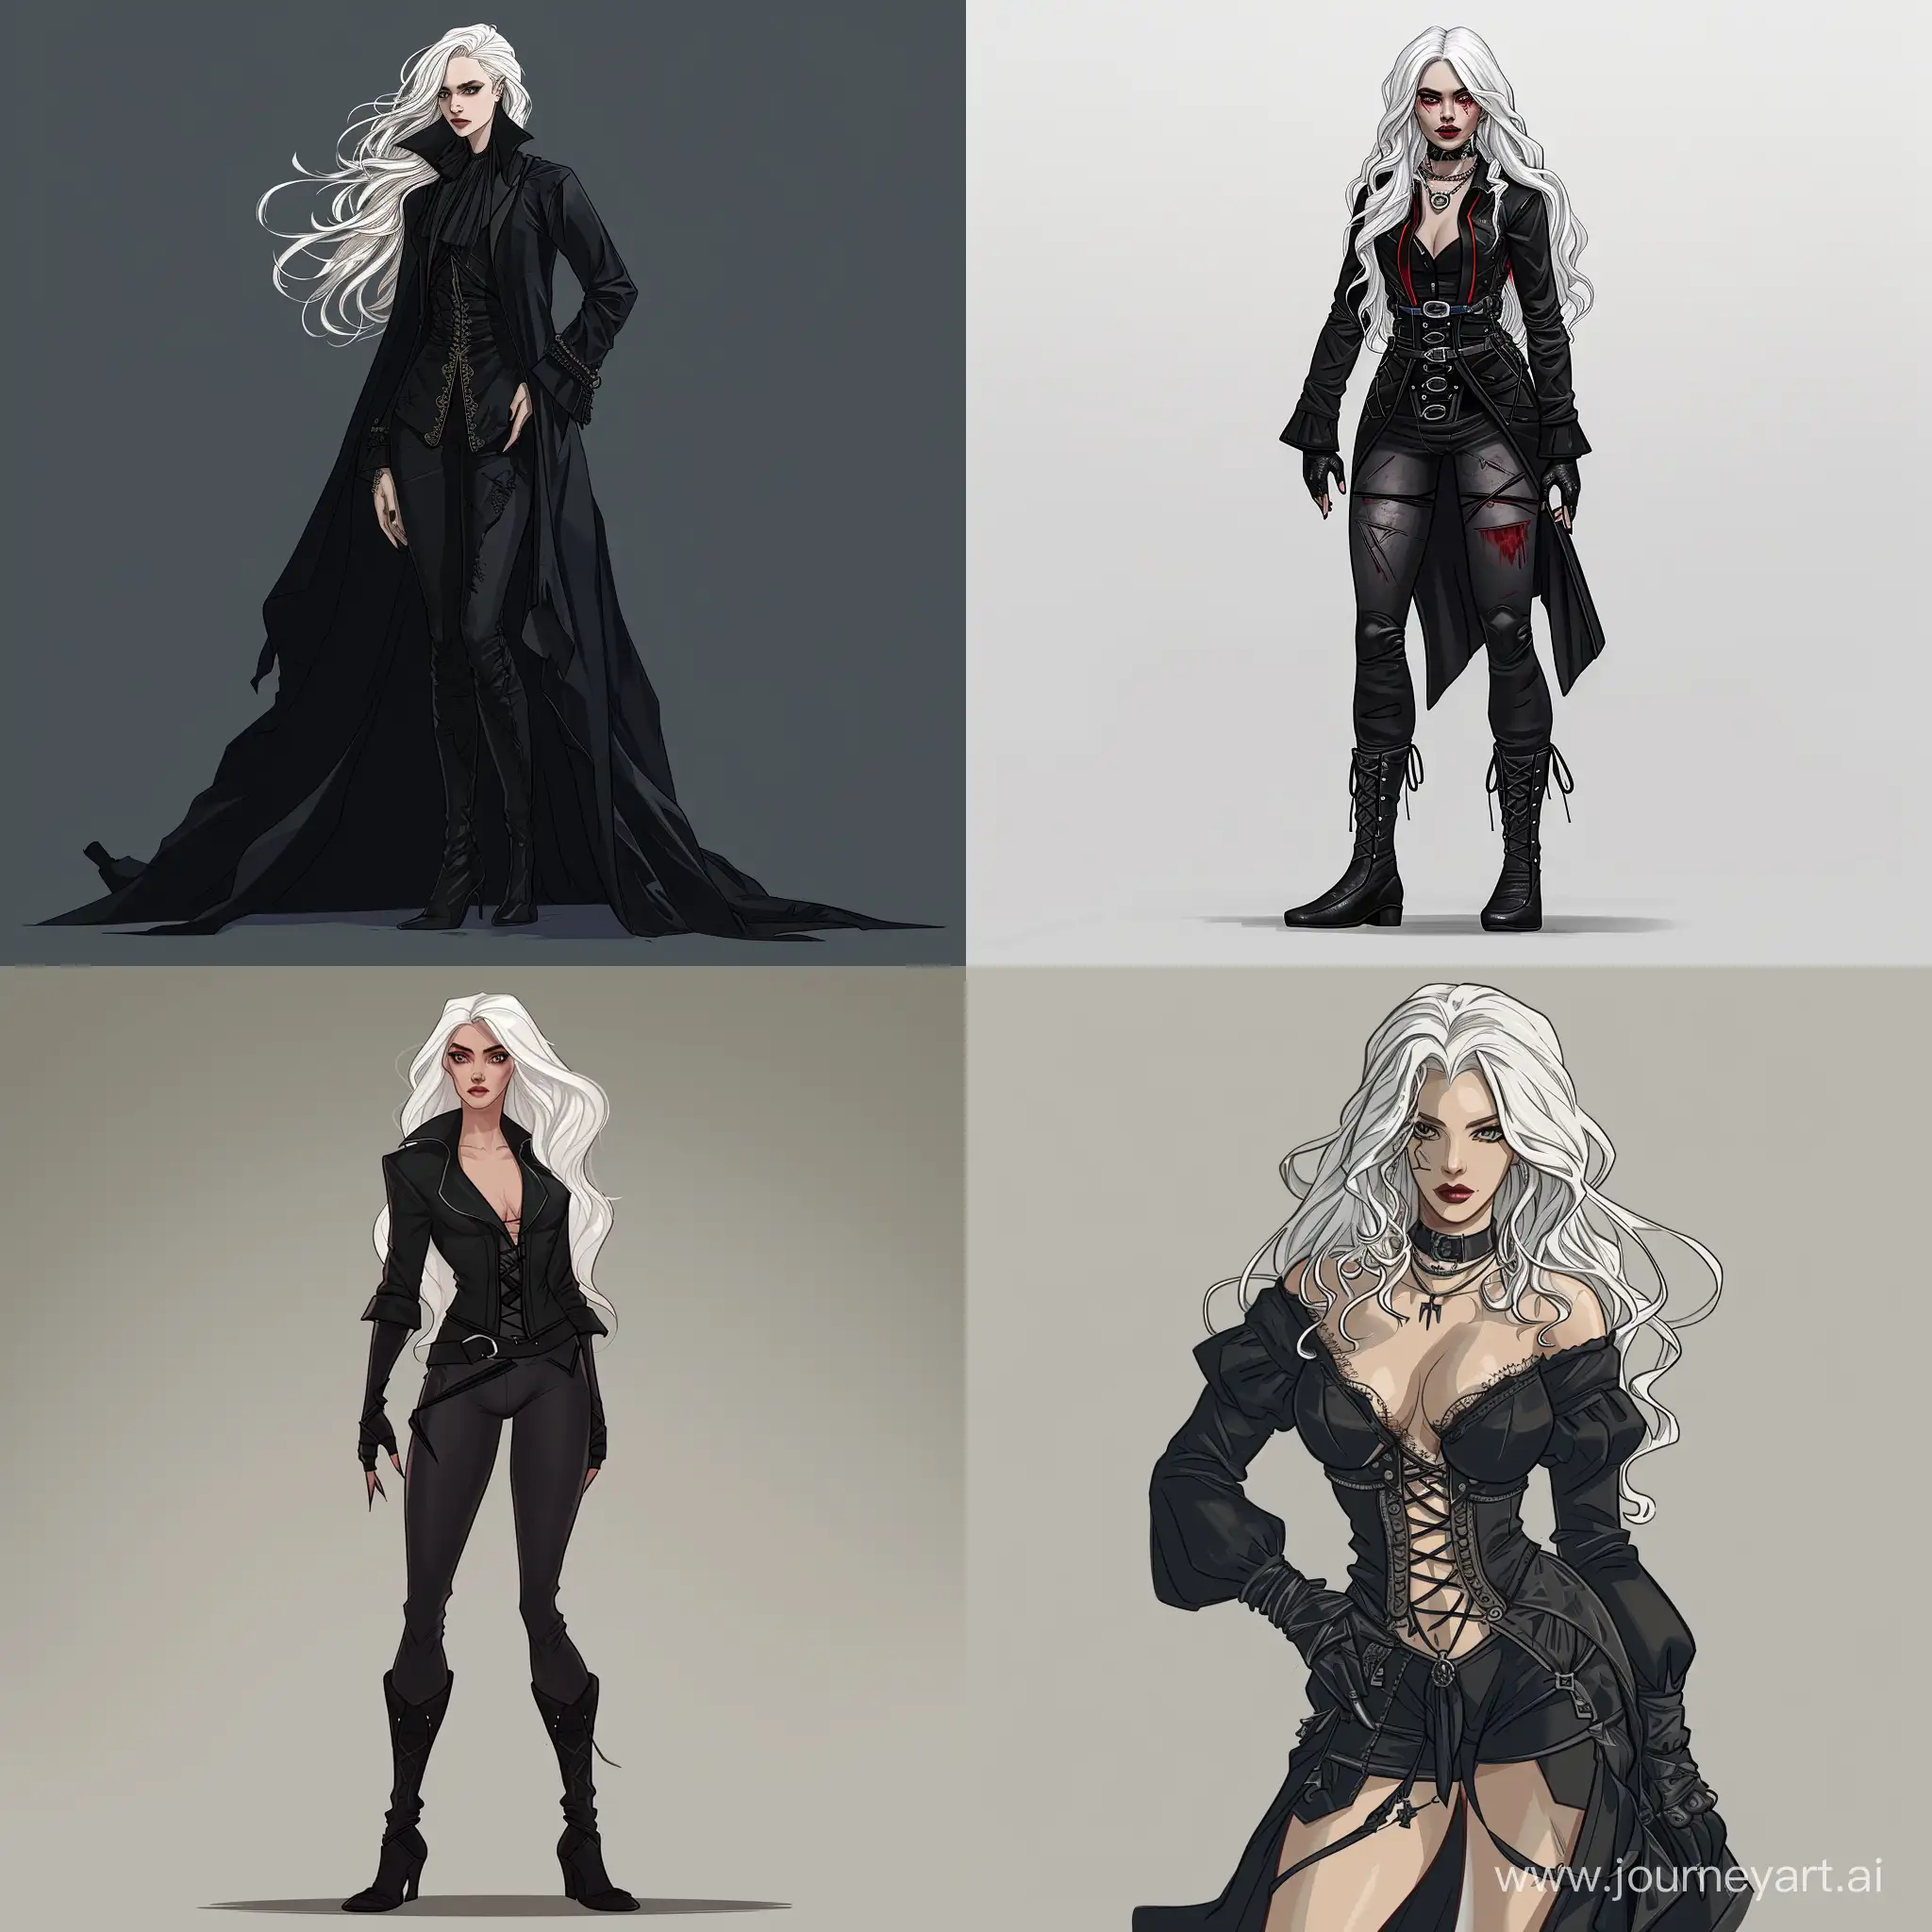 Mystical-Vampire-Queen-in-Elegant-Black-Attire